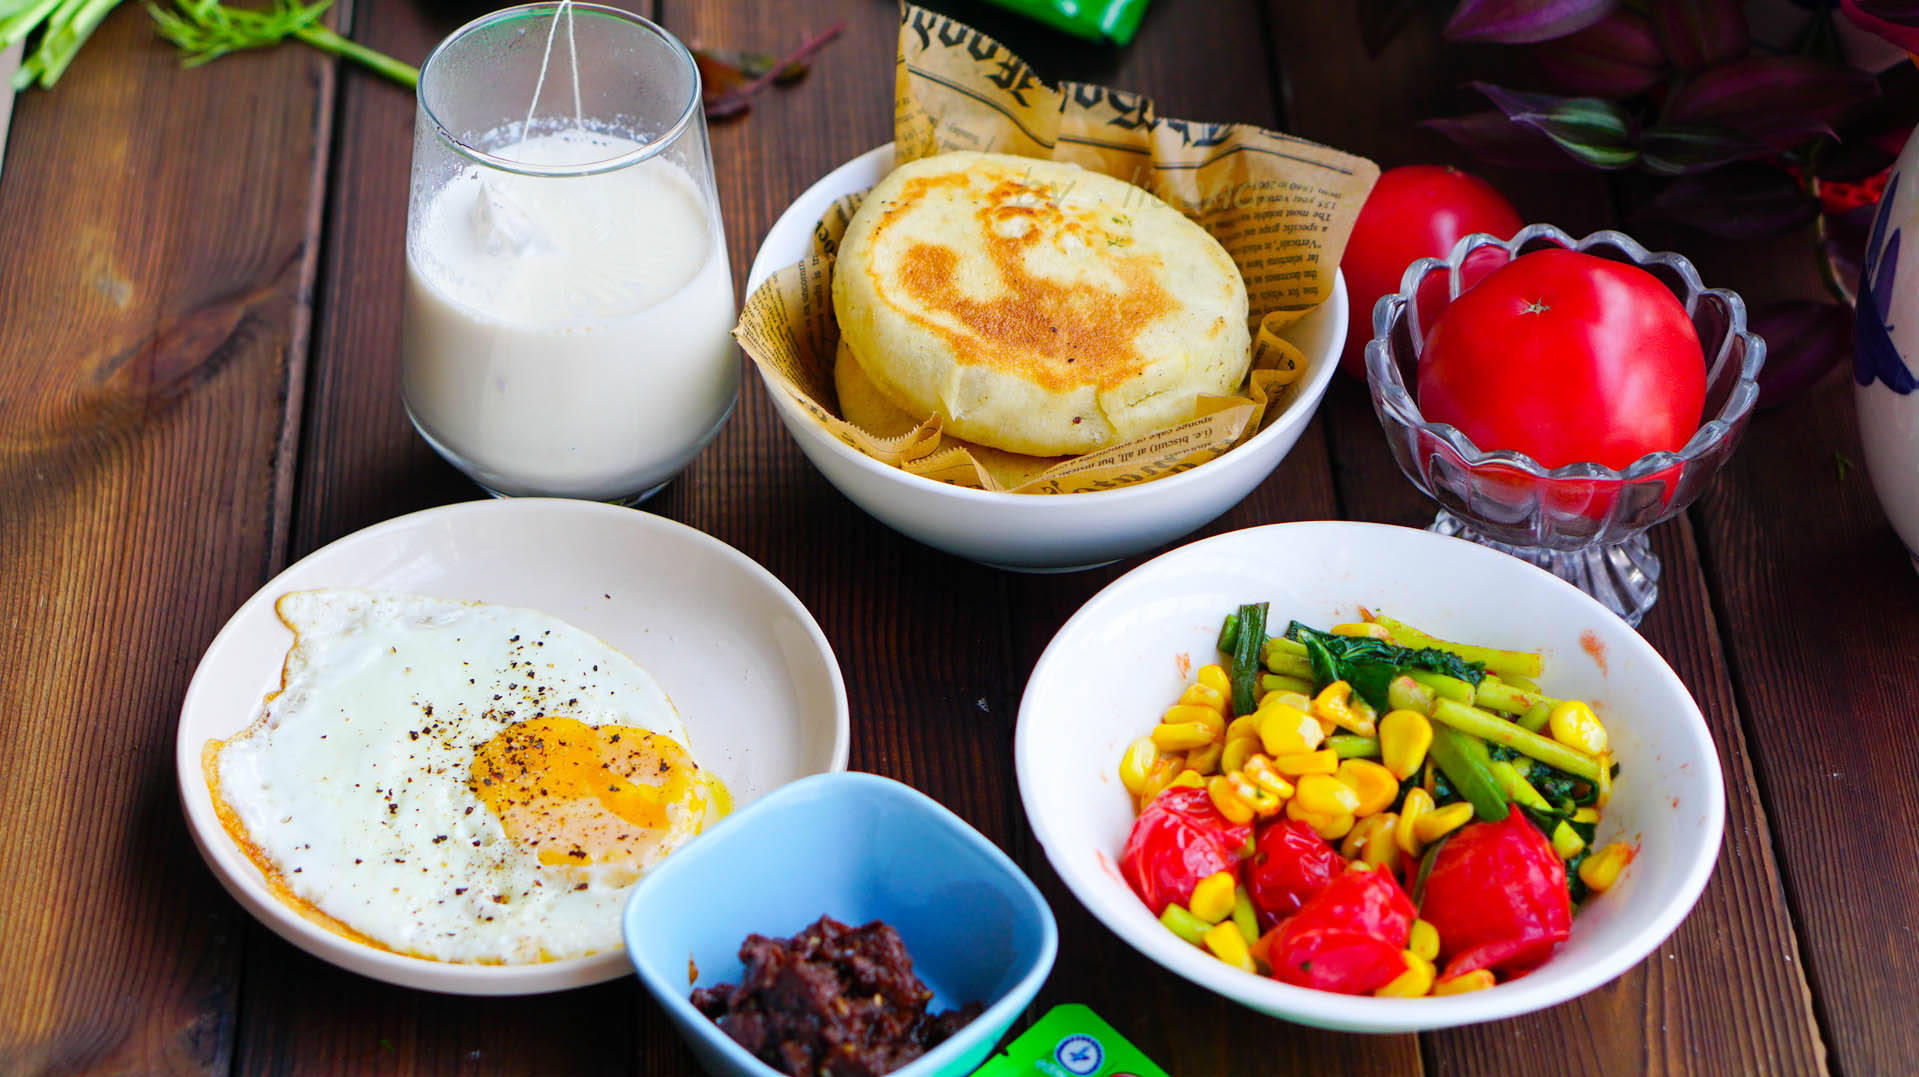 早餐四:煎炒时令蔬菜,茴香肉饼,牛奶,煎蛋,香菇酱.